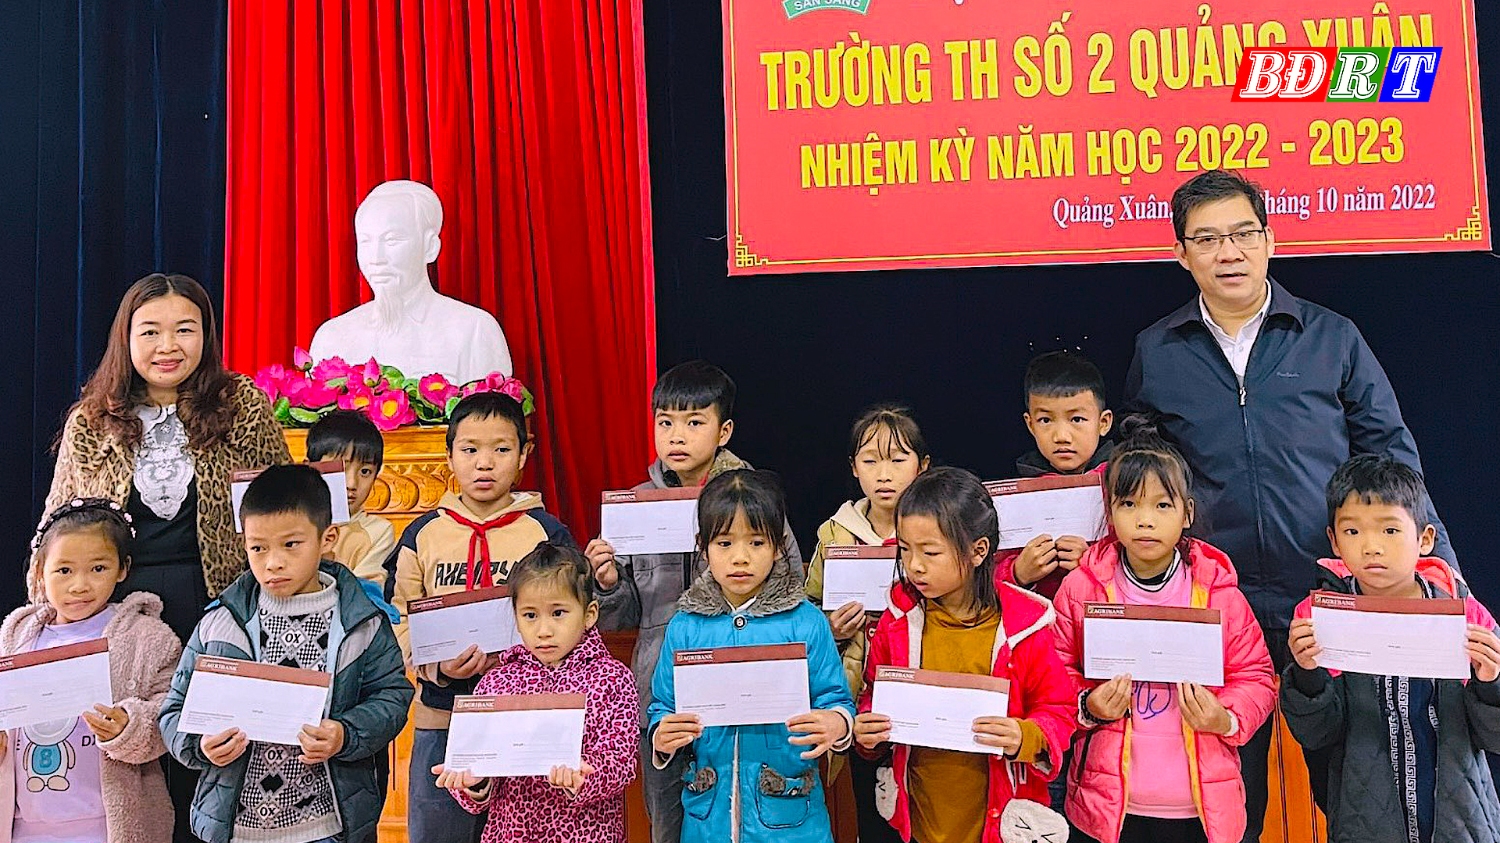 Agribank Quảng Trạch Bắc Quảng Bình trao quà hỗ trợ học sinh nghèo tại trường TH số 2 Quảng Xuân